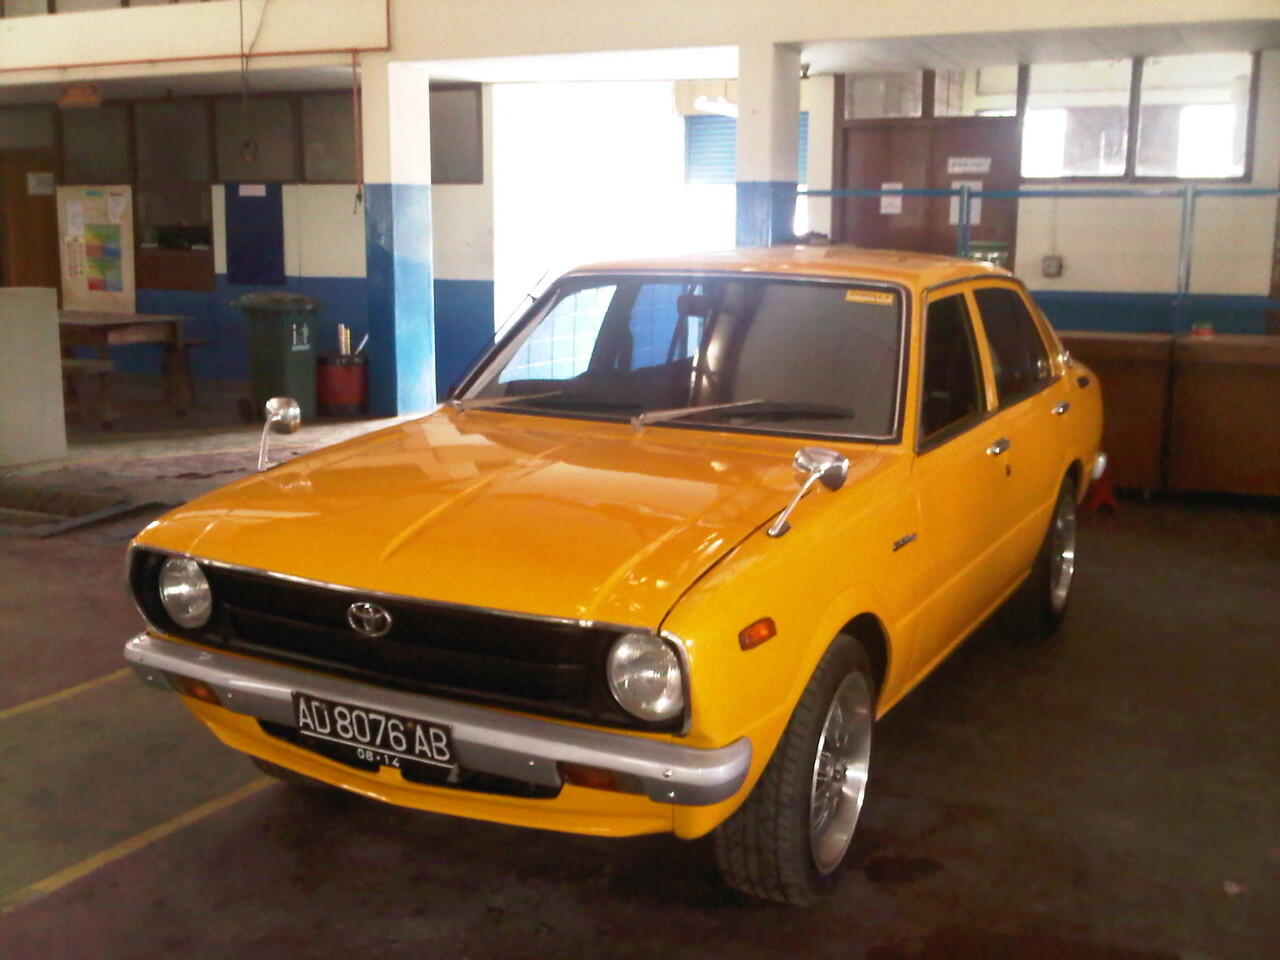  Modifikasi  Mobil  Toyota Corolla  1975 Modifotto